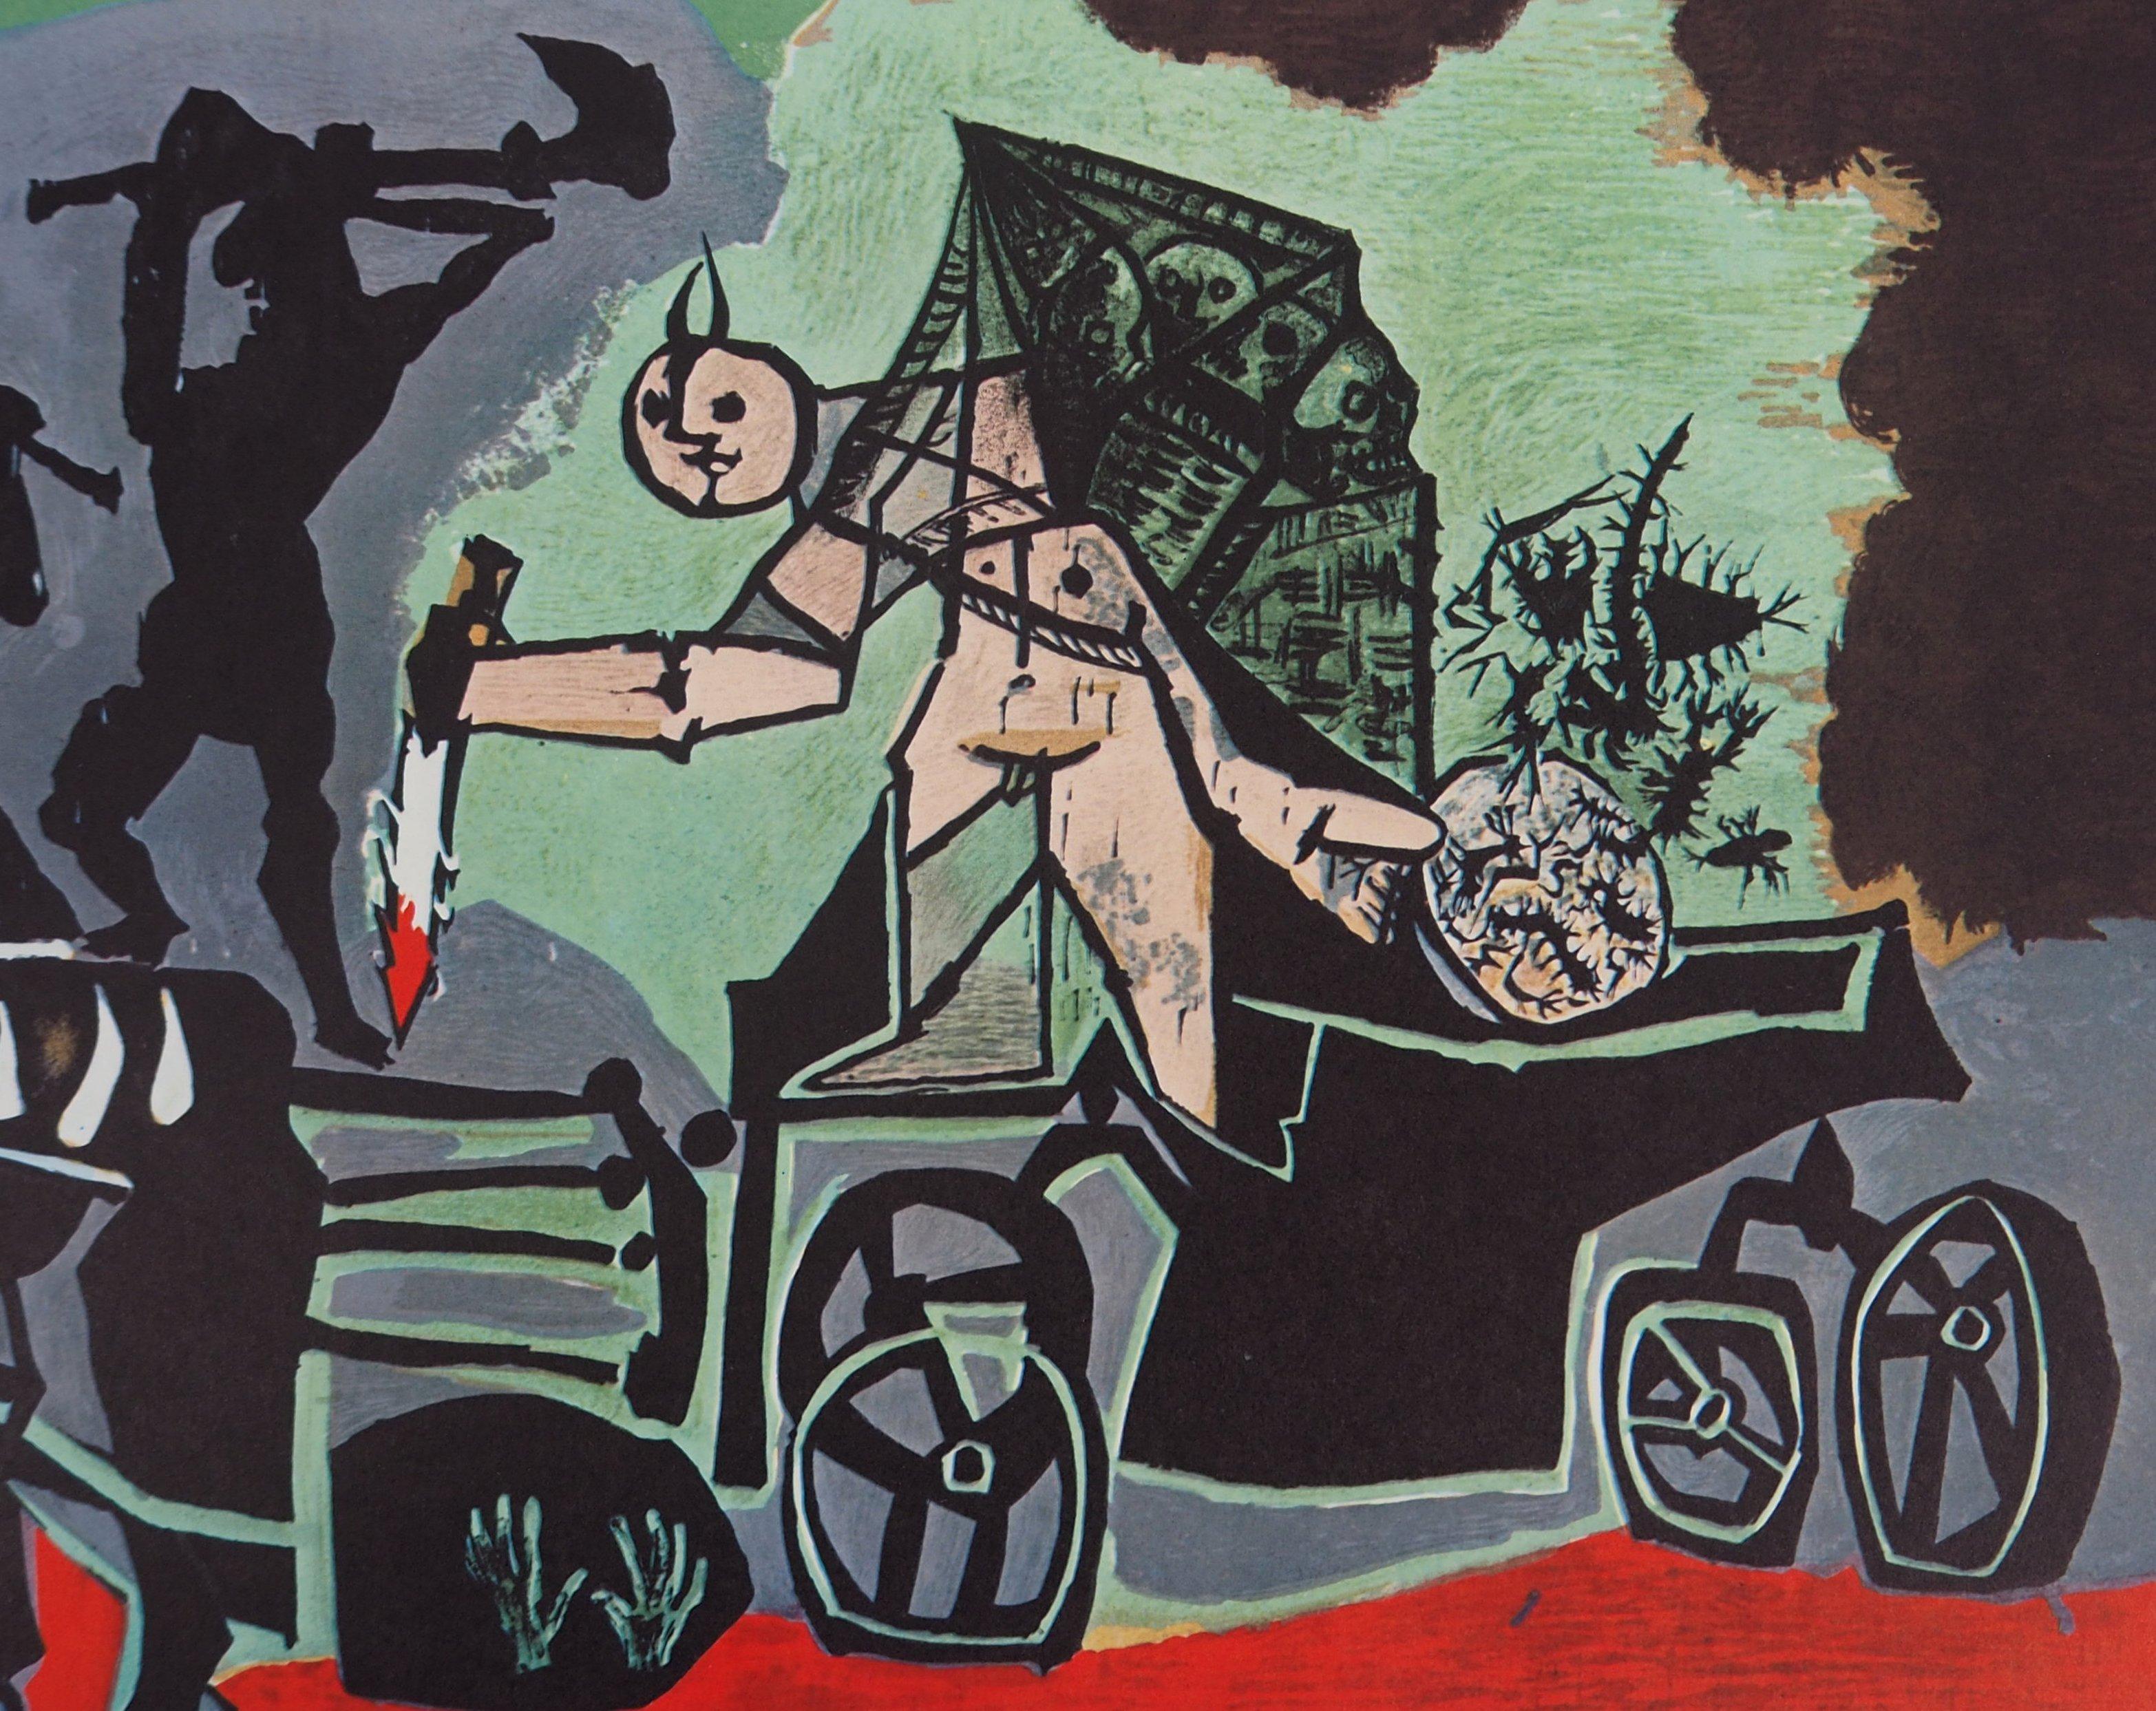 Pablo PICASSO (nach)
Krieg (La Guerre), 1969

Lithographie-Offsetdruck nach einer Zeichnung von Picasso
Auf Papier 35 x 65 cm (ca. 13,7 x 25,5 Zoll)
Herausgegeben vom Cercle d'art im Jahr 1969

Ausgezeichneter Zustand